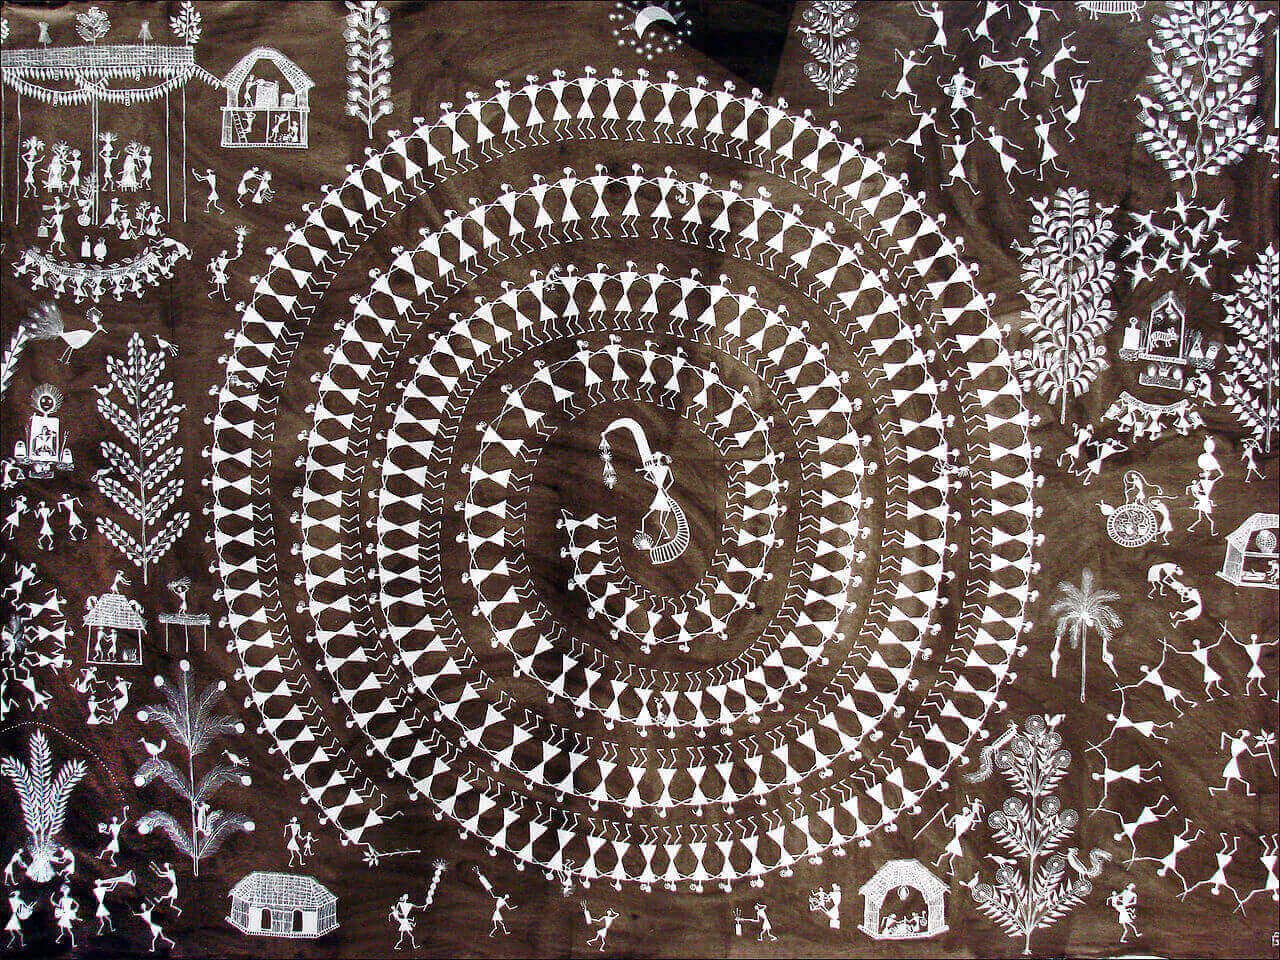 Warli painting by Jivya Soma Mashe, Thane, India